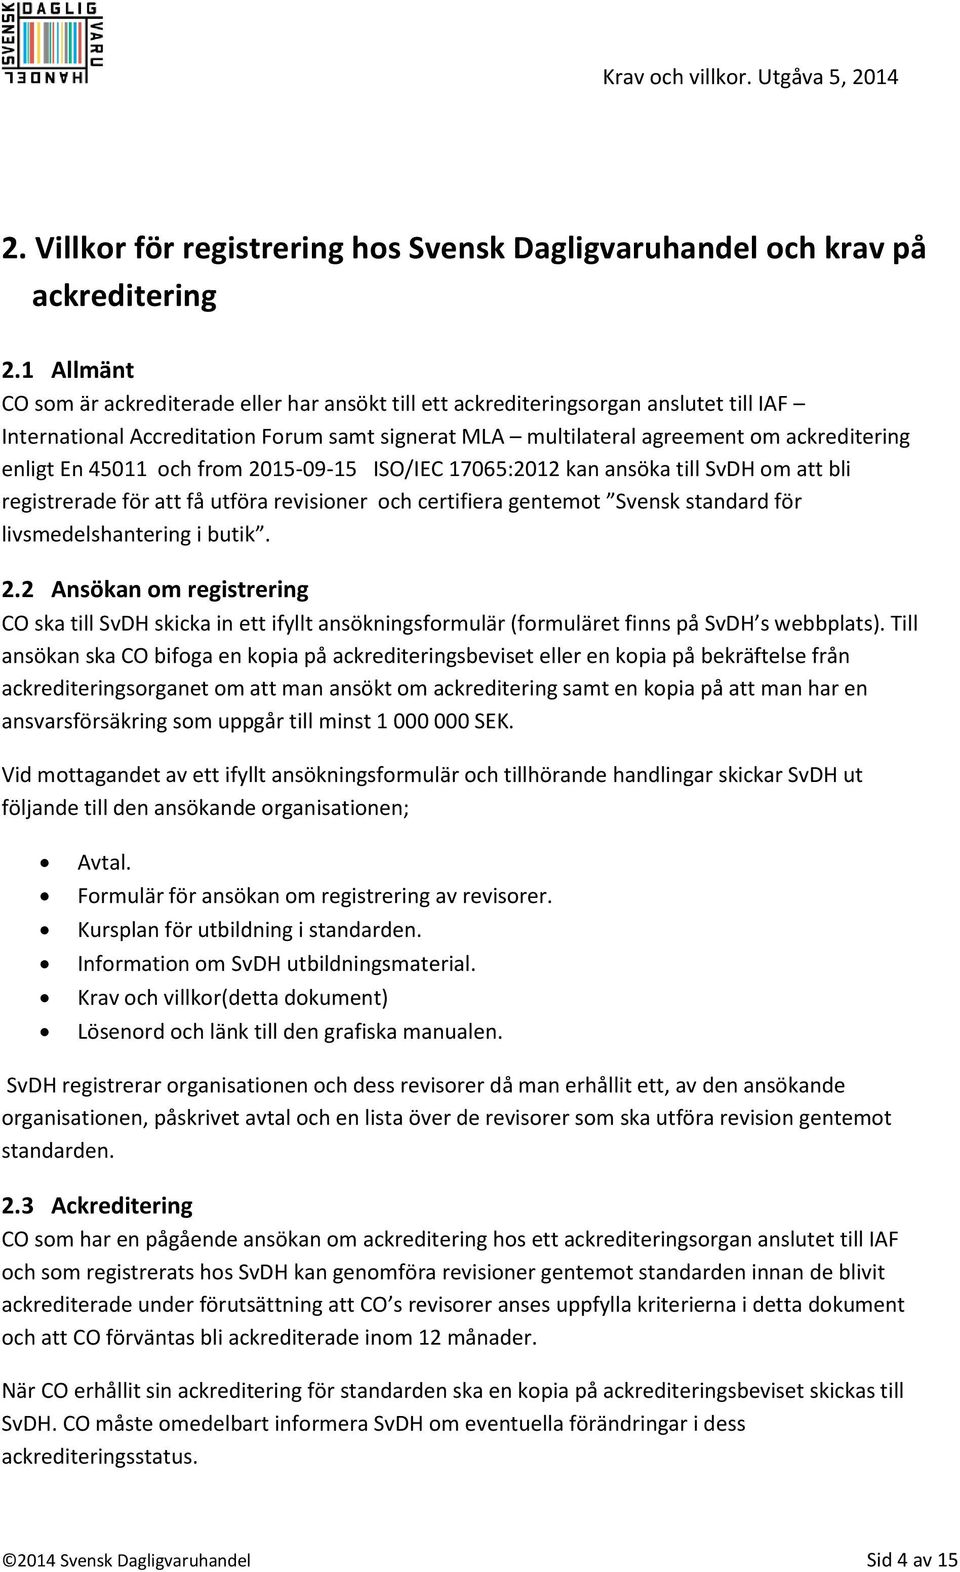 45011 och from 2015-09-15 ISO/IEC 17065:2012 kan ansöka till SvDH om att bli registrerade för att få utföra revisioner och certifiera gentemot Svensk standard för livsmedelshantering i butik. 2.2 Ansökan om registrering CO ska till SvDH skicka in ett ifyllt ansökningsformulär (formuläret finns på SvDH s webbplats).